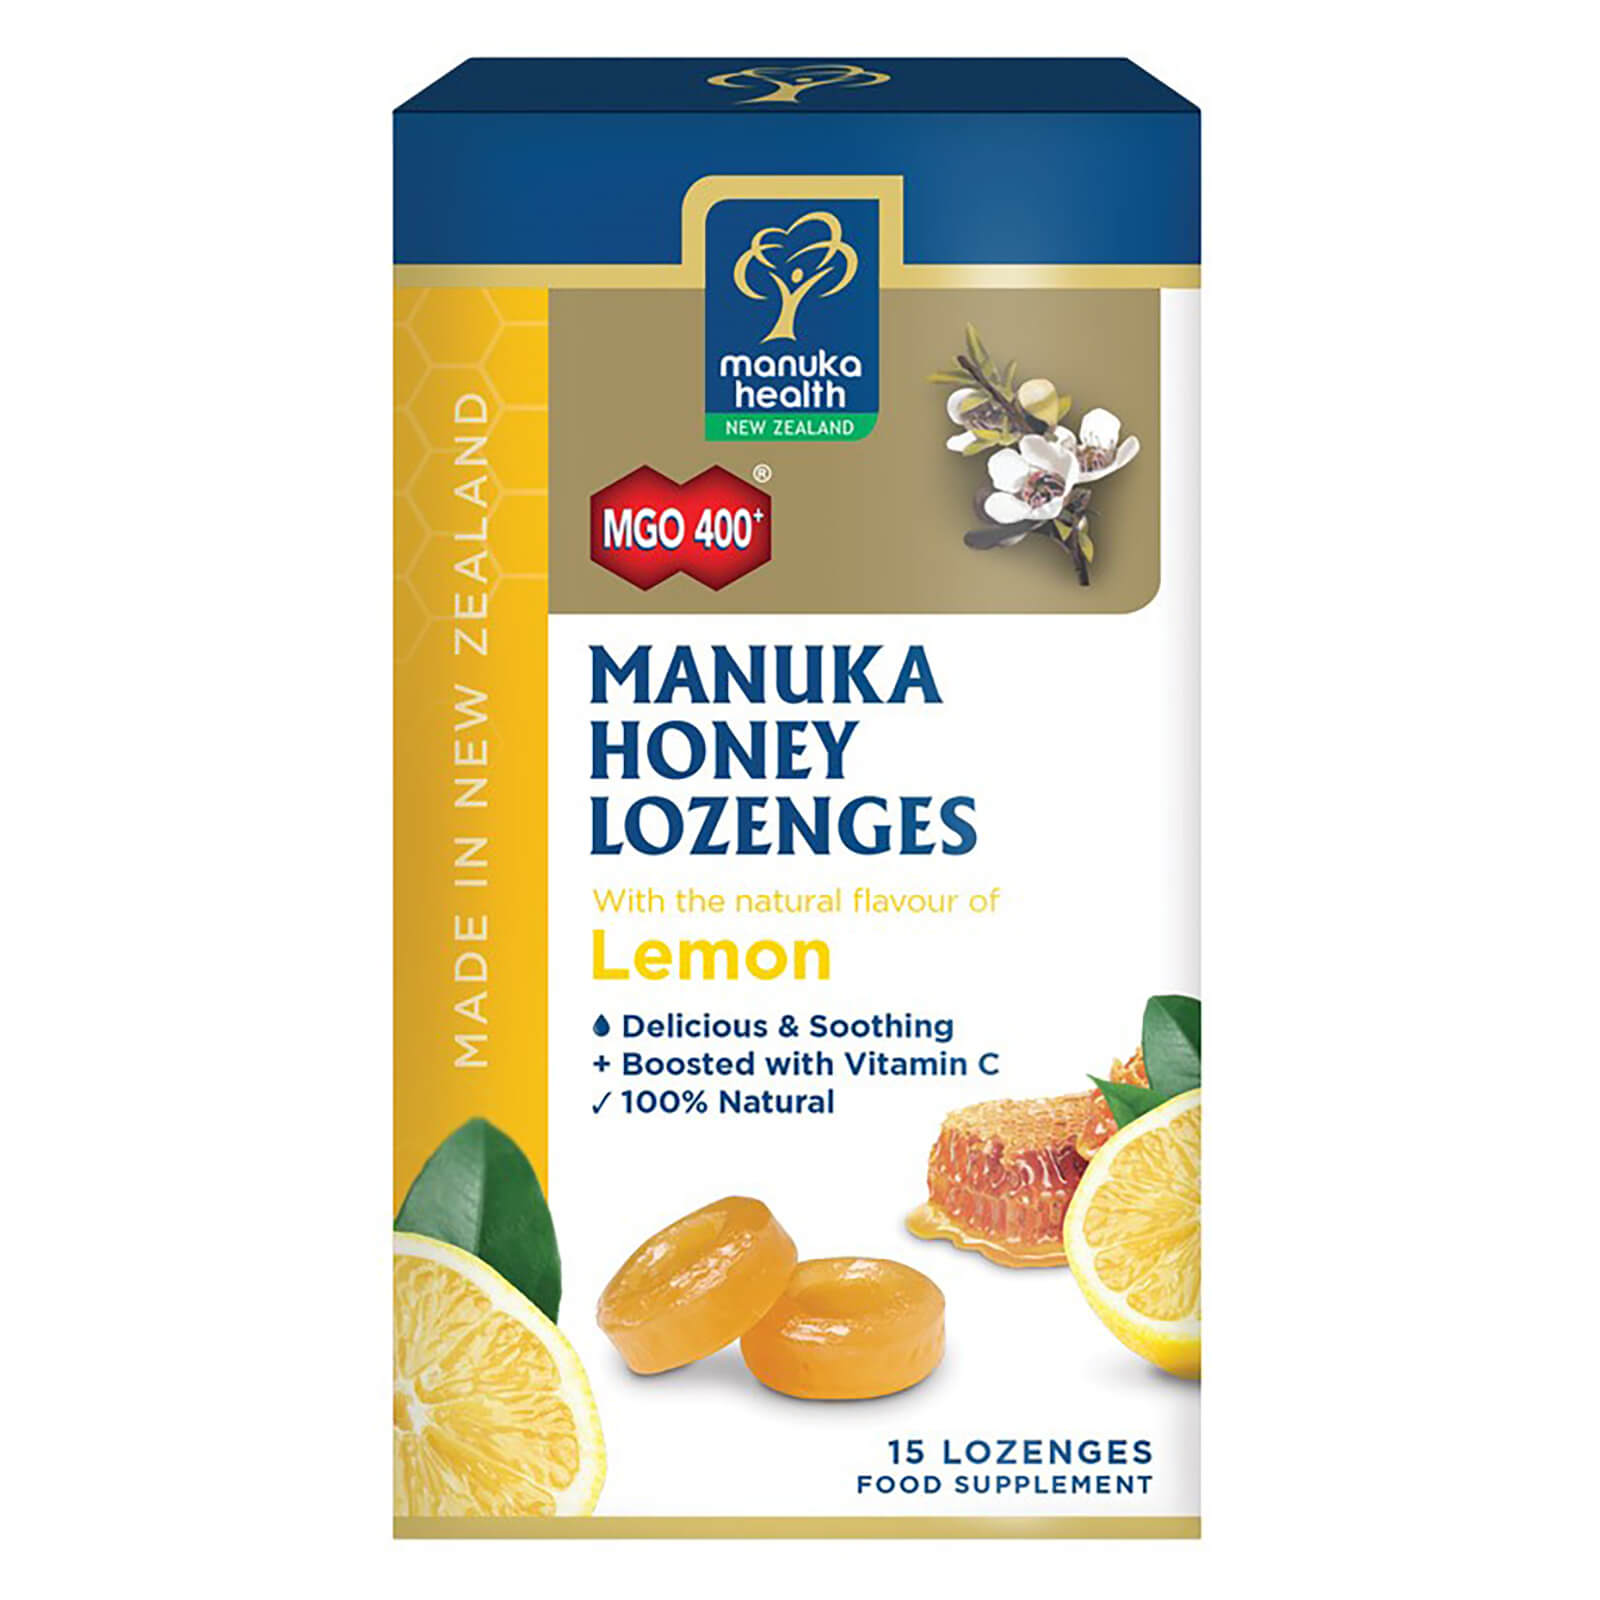 MGO 400+ Manuka Honey Lozenges with Lemon – 15 Lozenges lookfantastic.com imagine